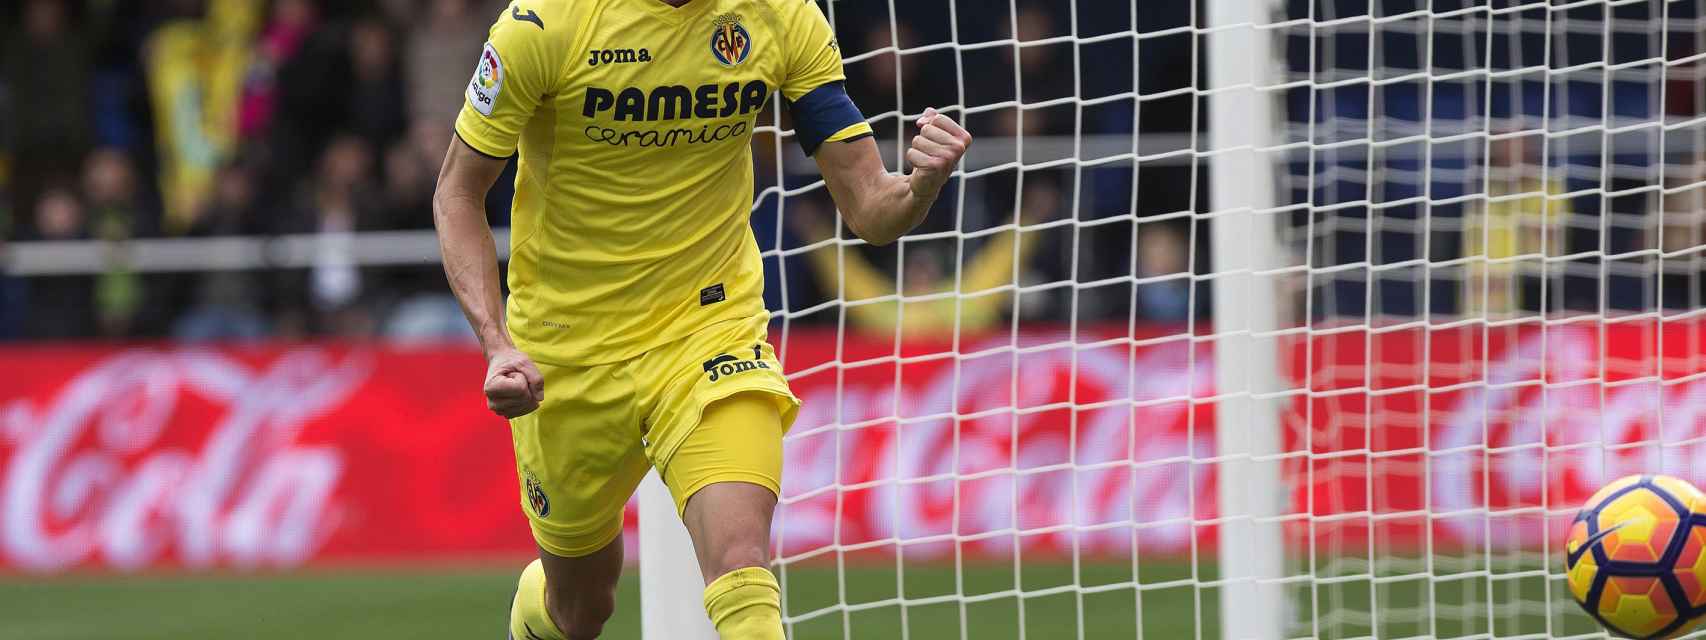 Bruno celebra un gol con el Villarreal.